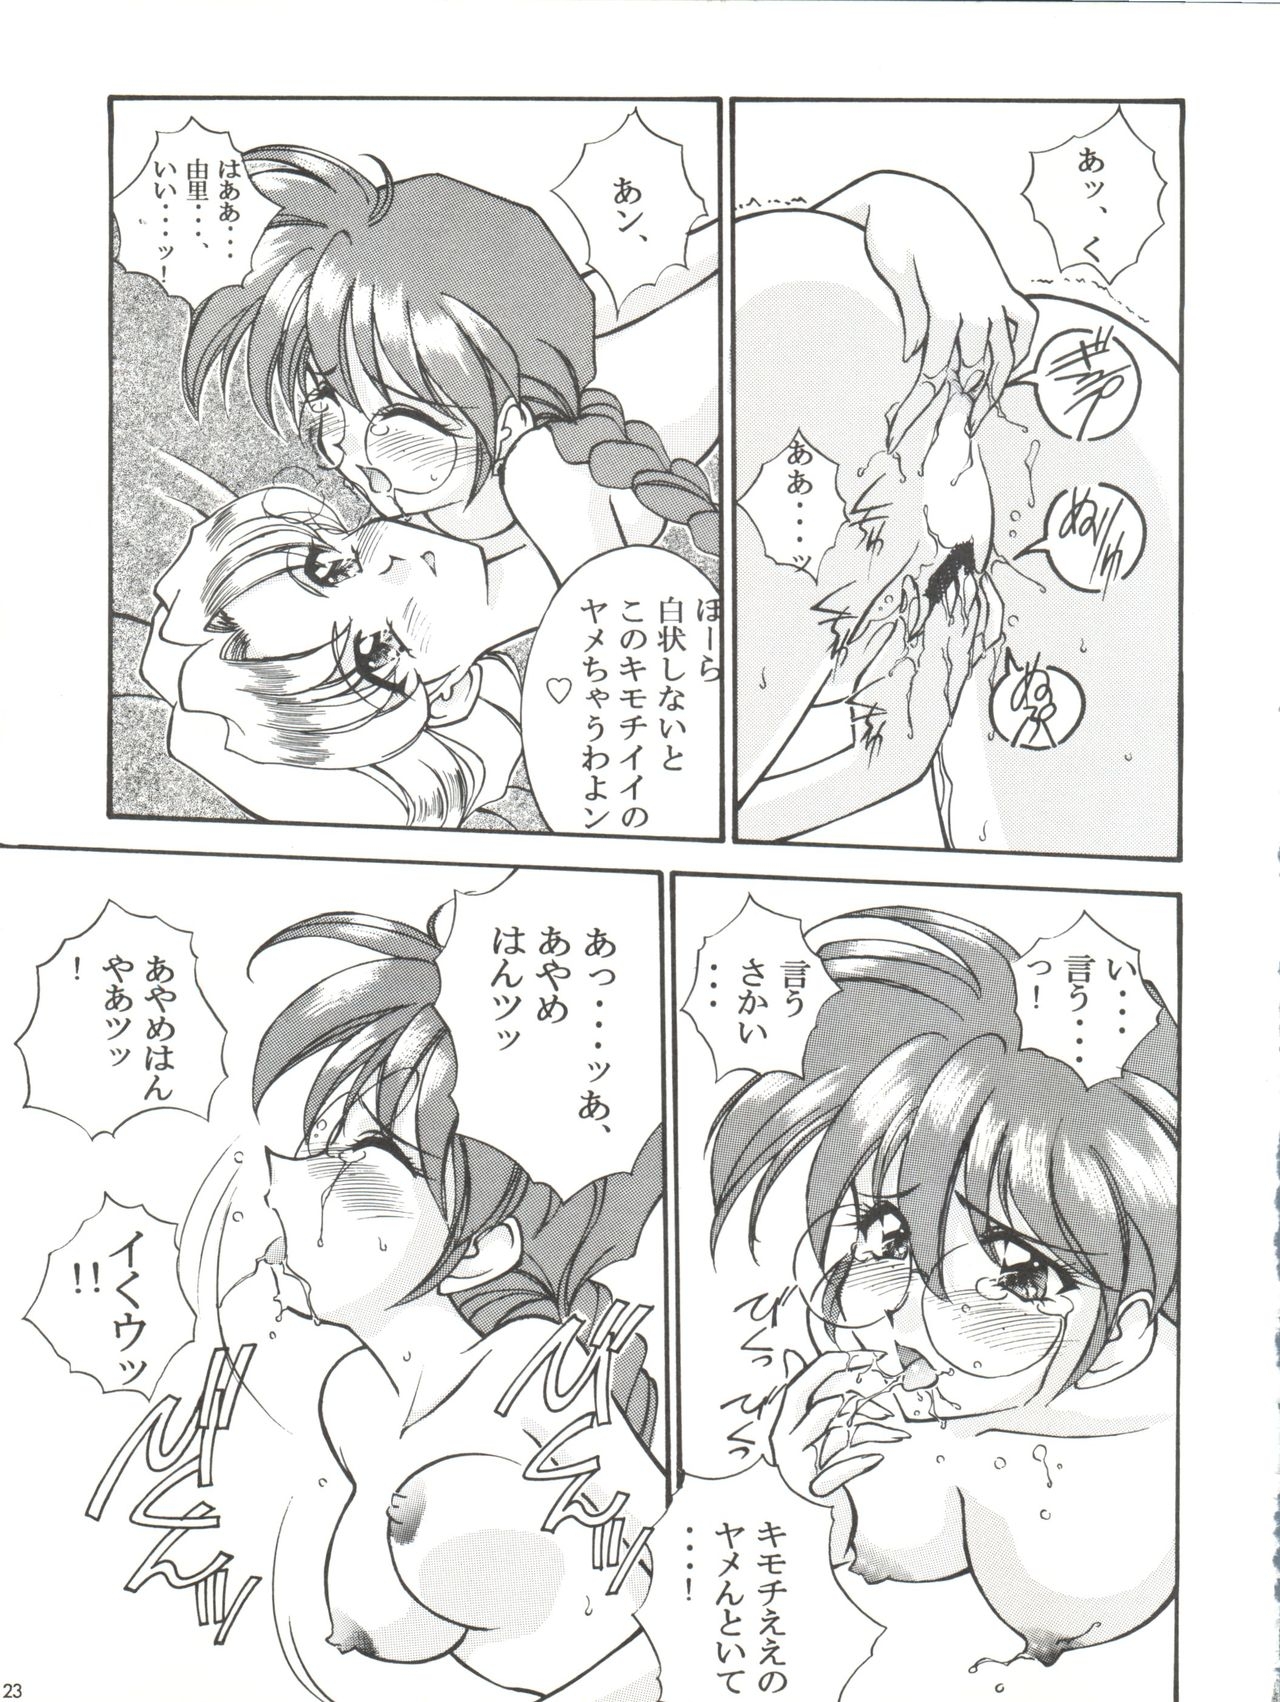 [LUCK&PLUCK!Co. (Amanomiya Haruka)] Li Kohran no Gottsuee Kanji (Sakura Wars) [1997-05-25] 23